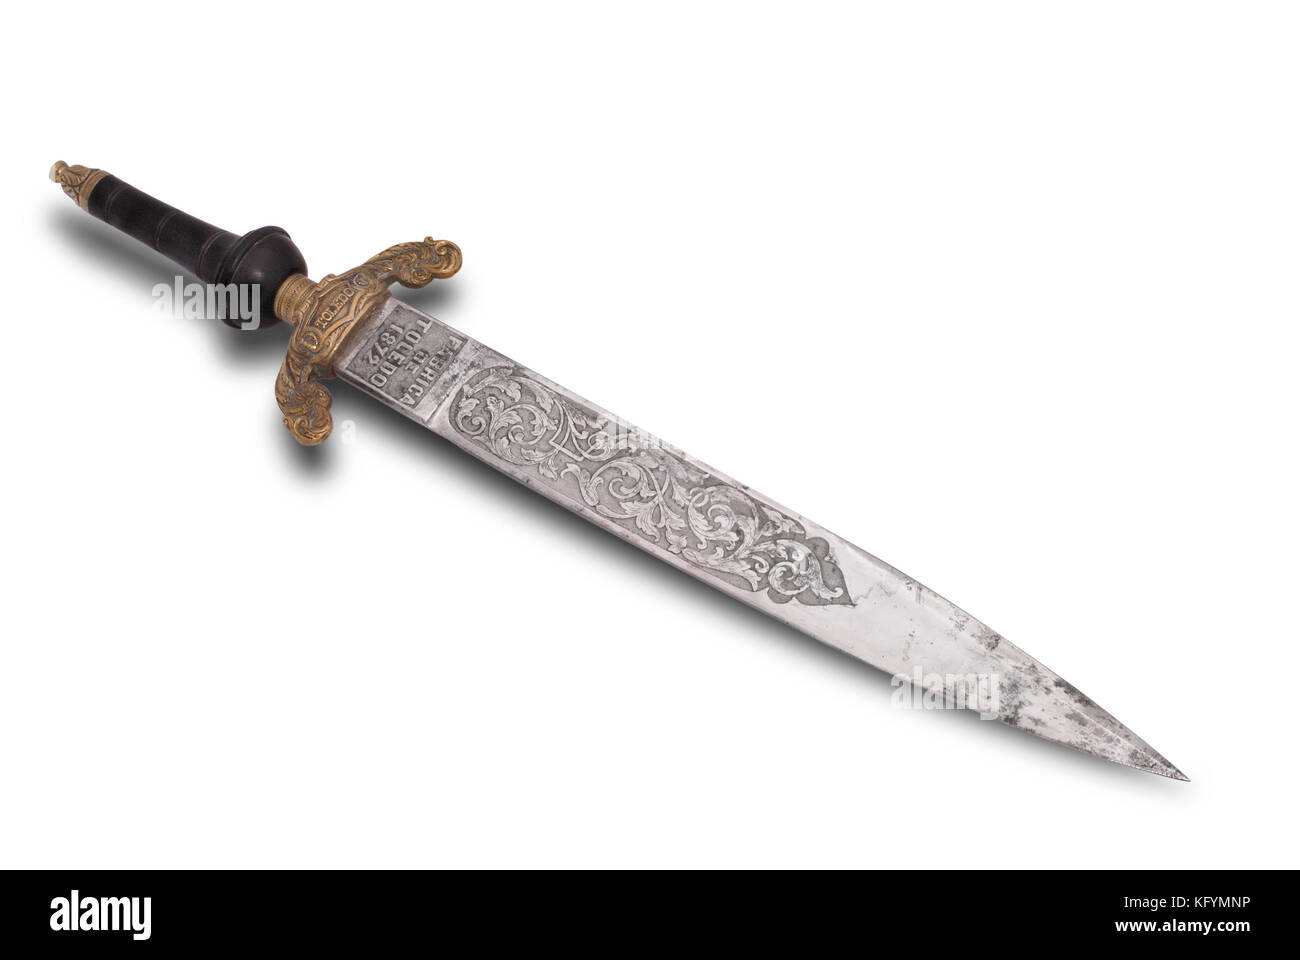 Fanteria spagnola spada baionetta dal famoso in acciaio di Toledo Spagna. Xix secolo. questo tipo è stato posto all'interno della canna. Foto Stock